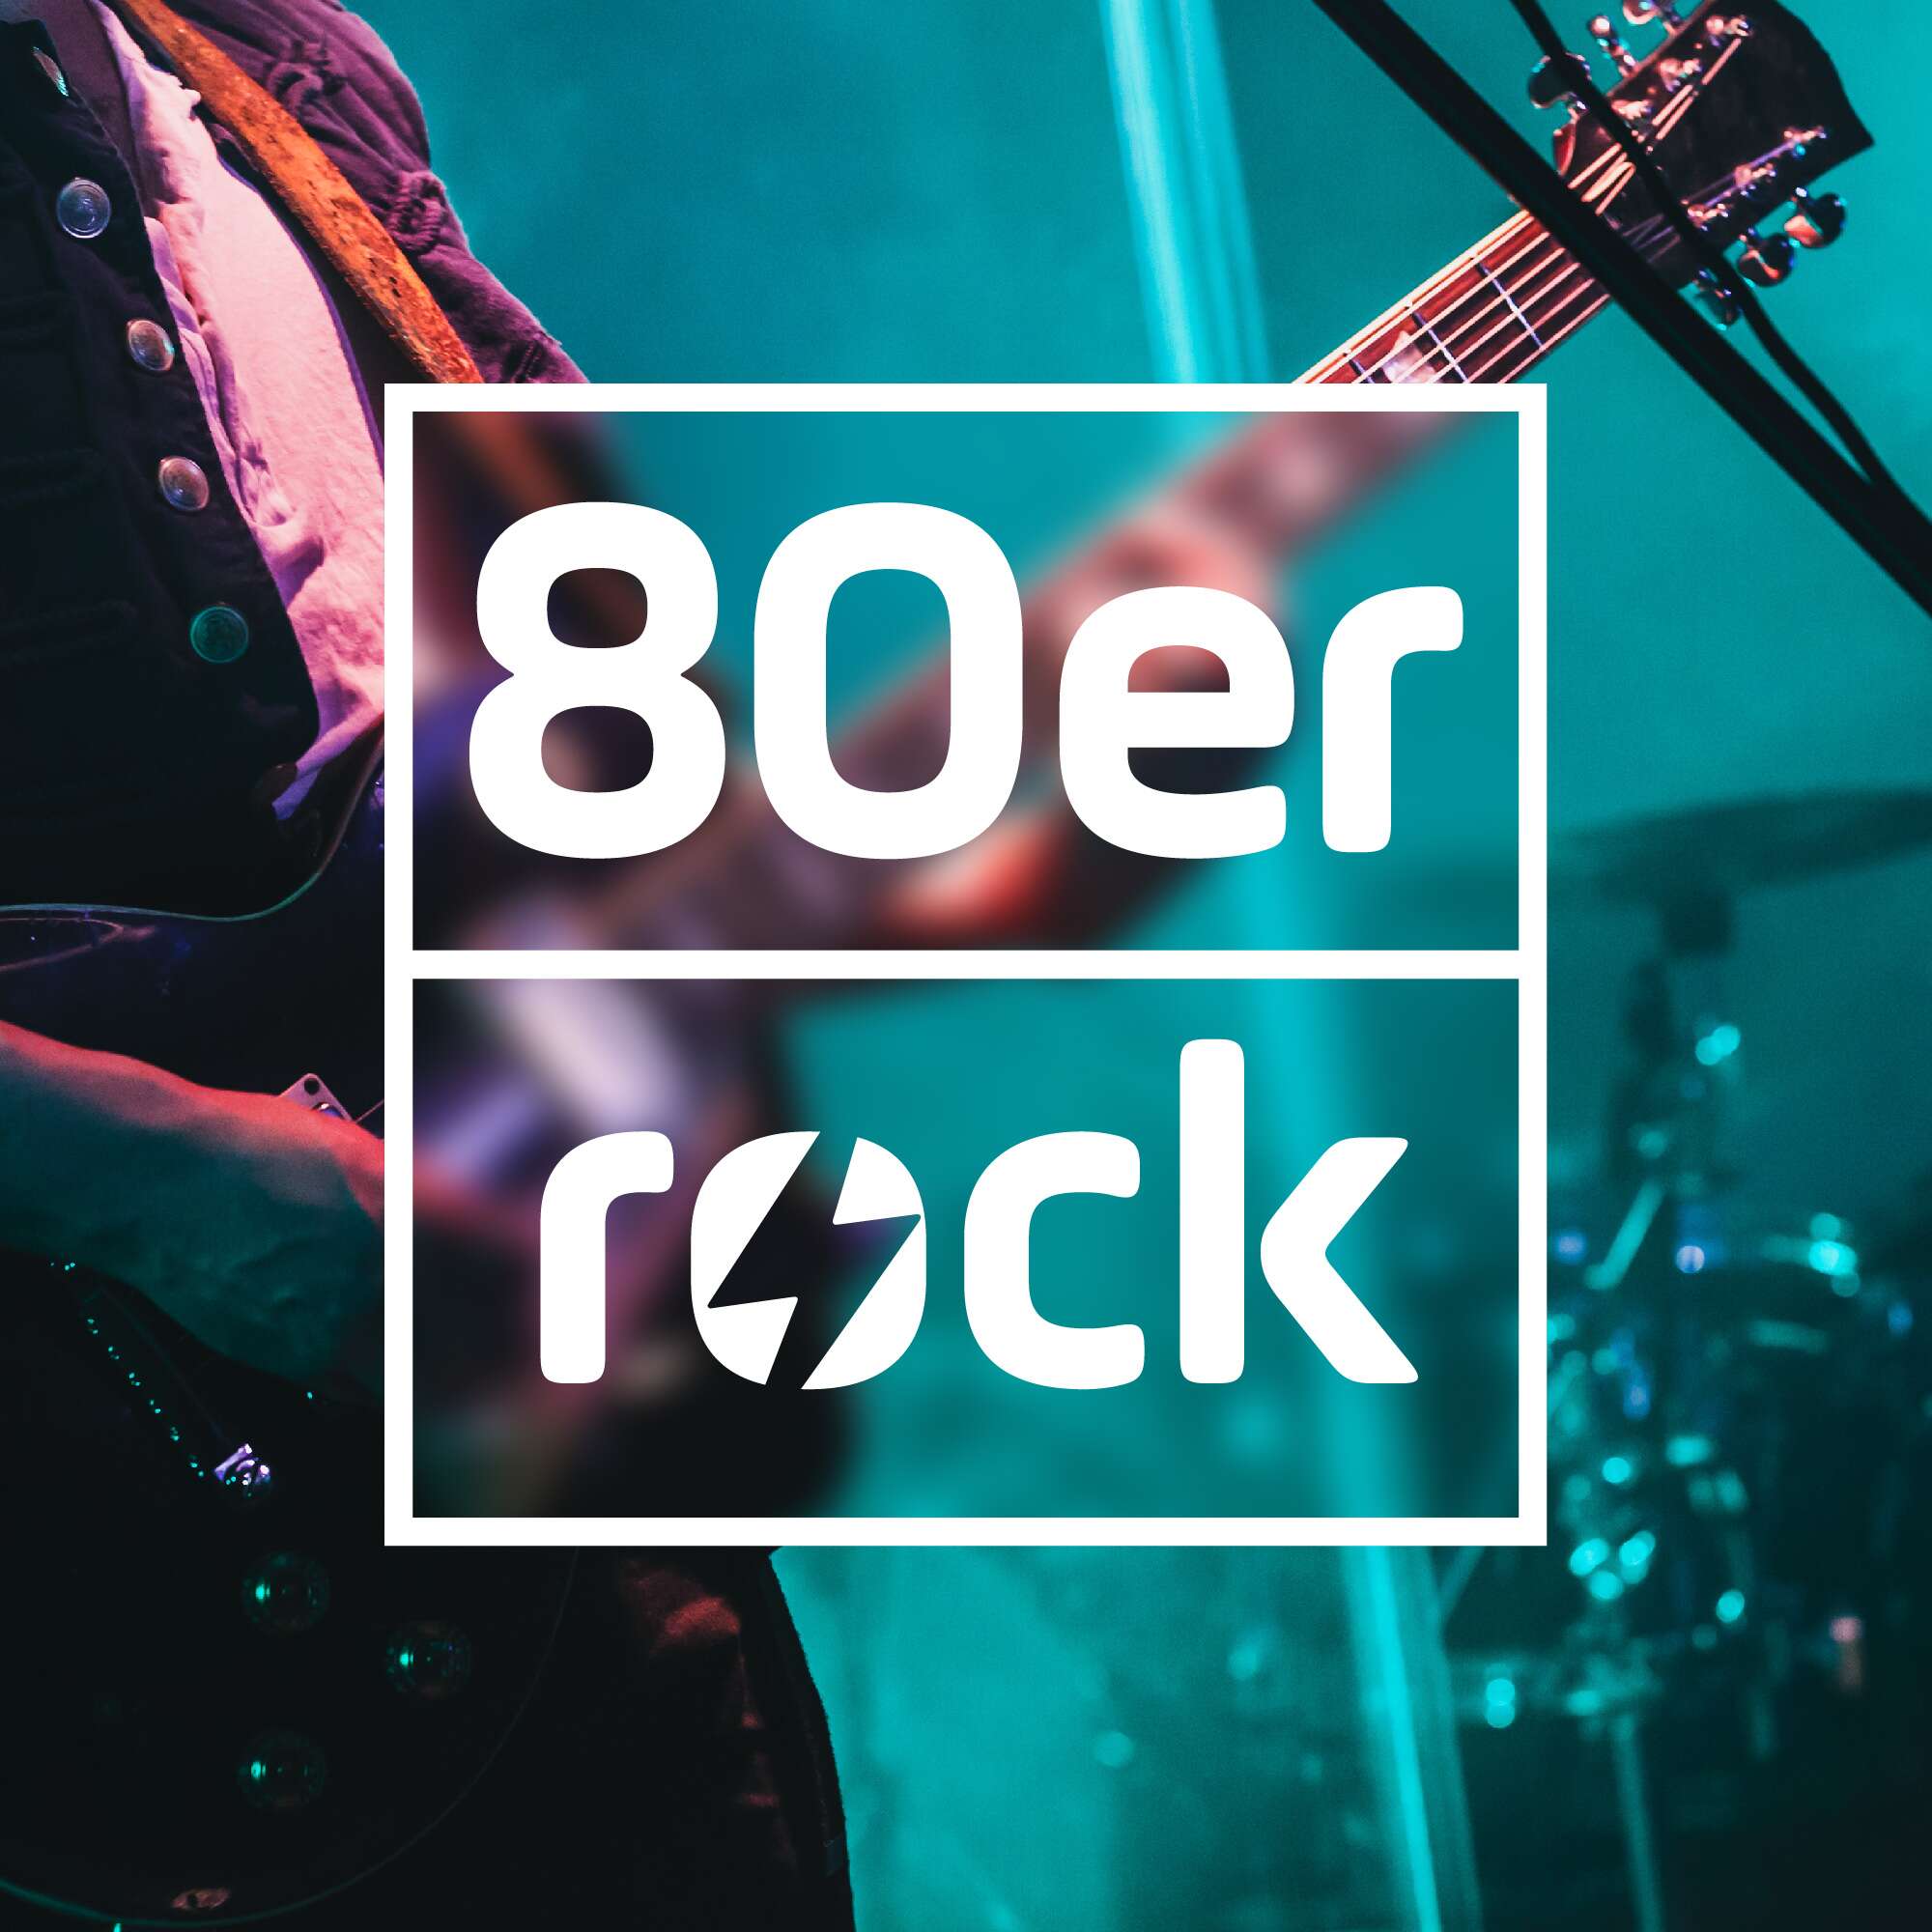 80er Rock